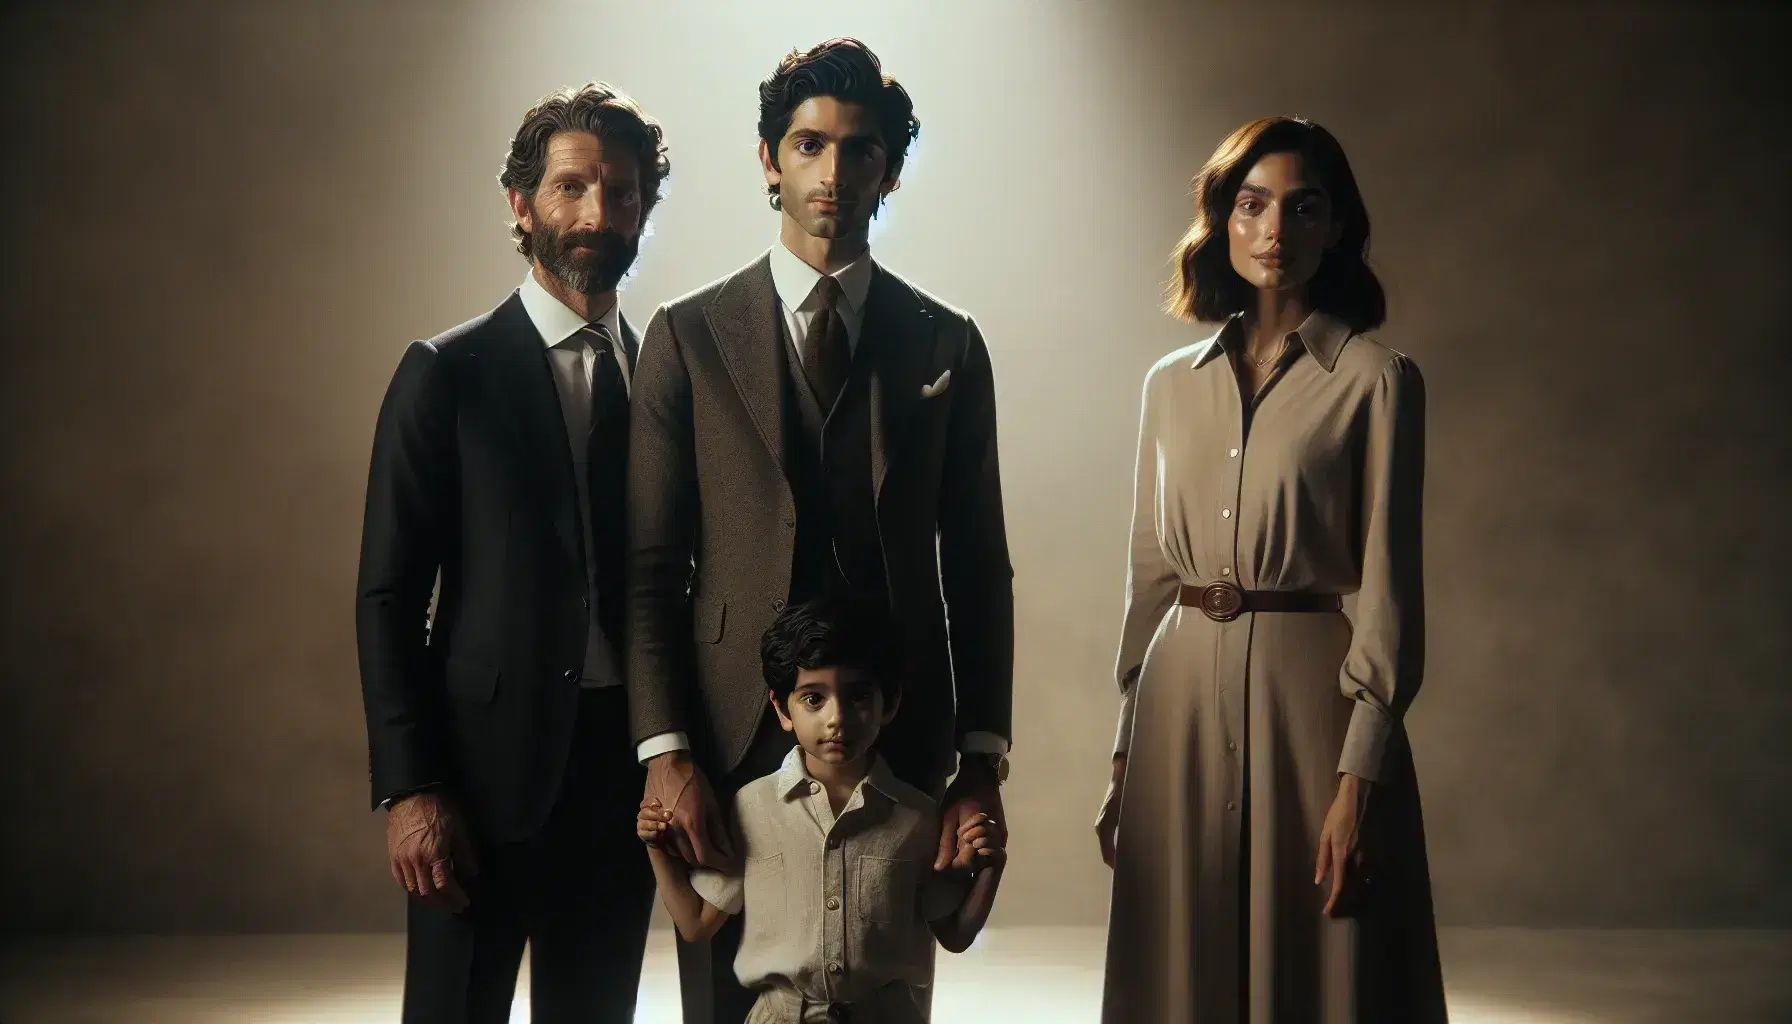 Familia multicultural sonriente con un hombre caucásico en traje, mujer de Medio Oriente en vestido claro y niño del sur de Asia en camisa y shorts.